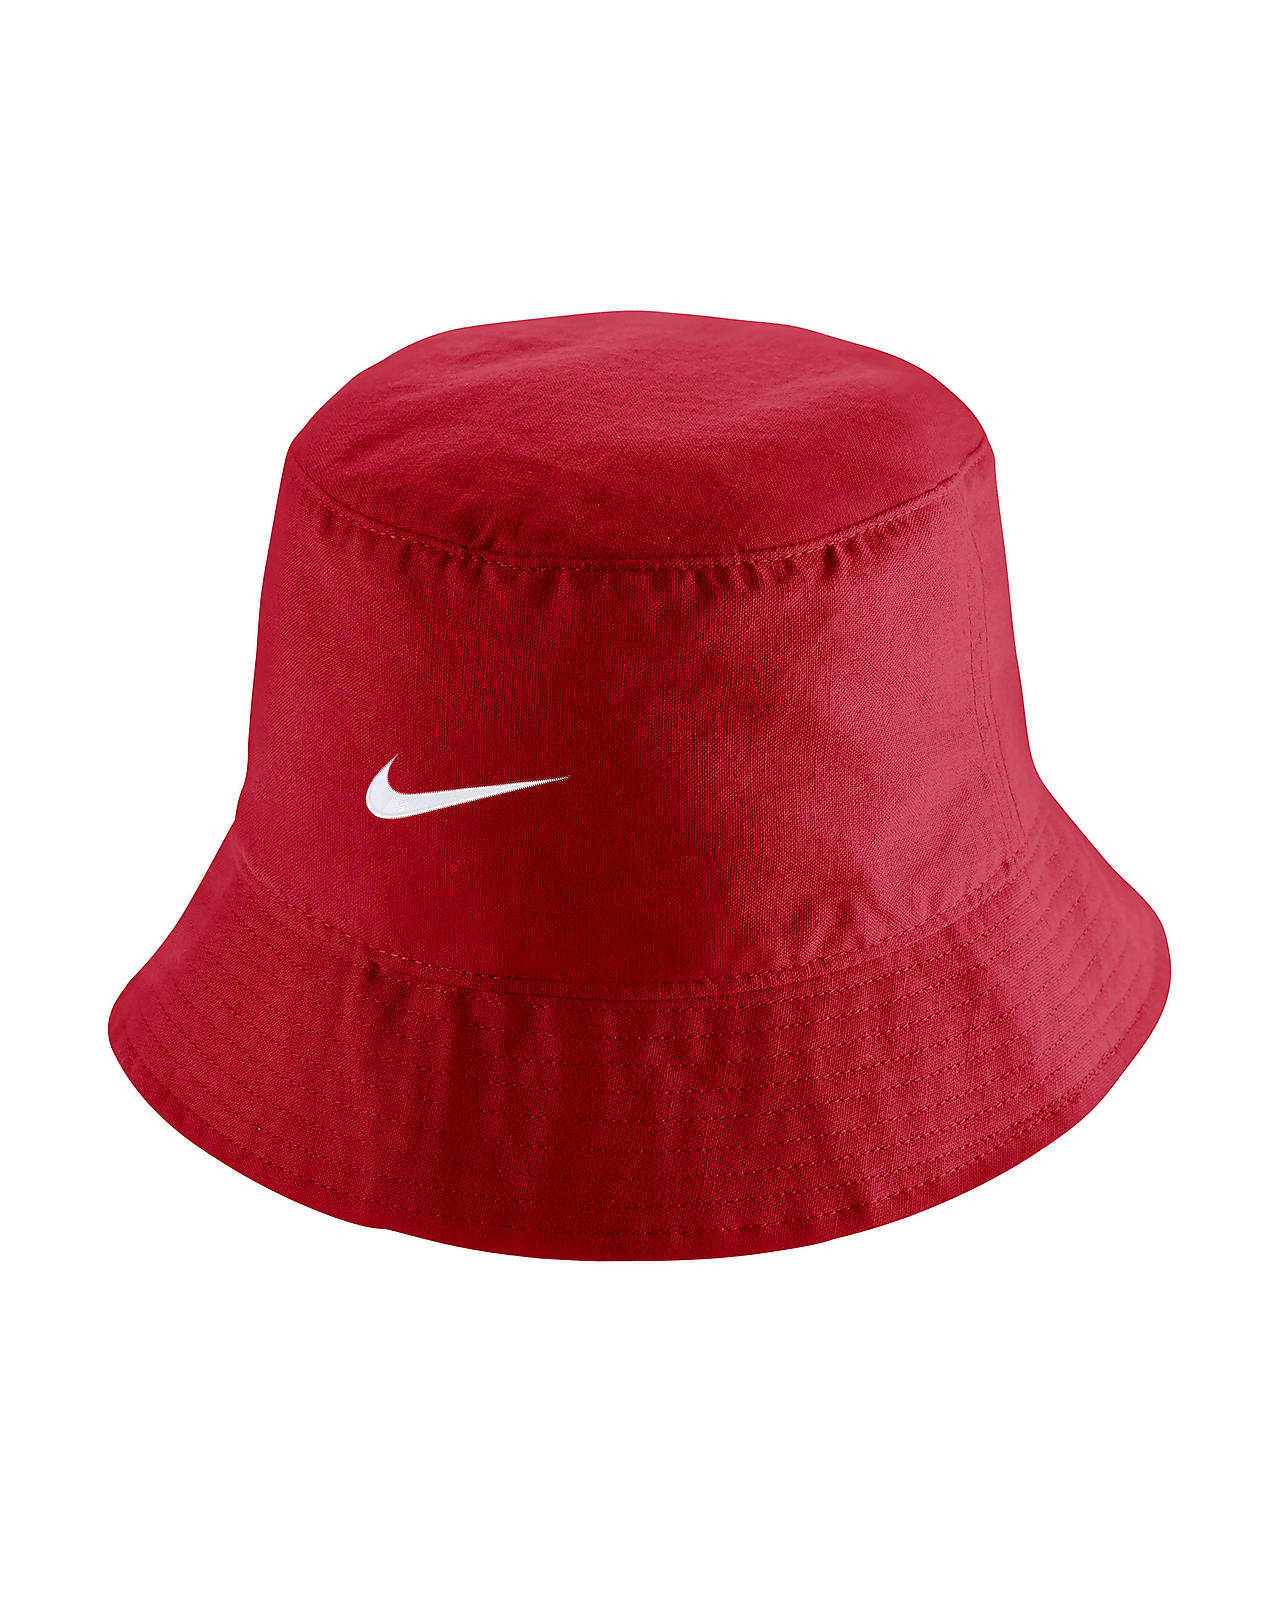 Canada Men's Bucket Hat.